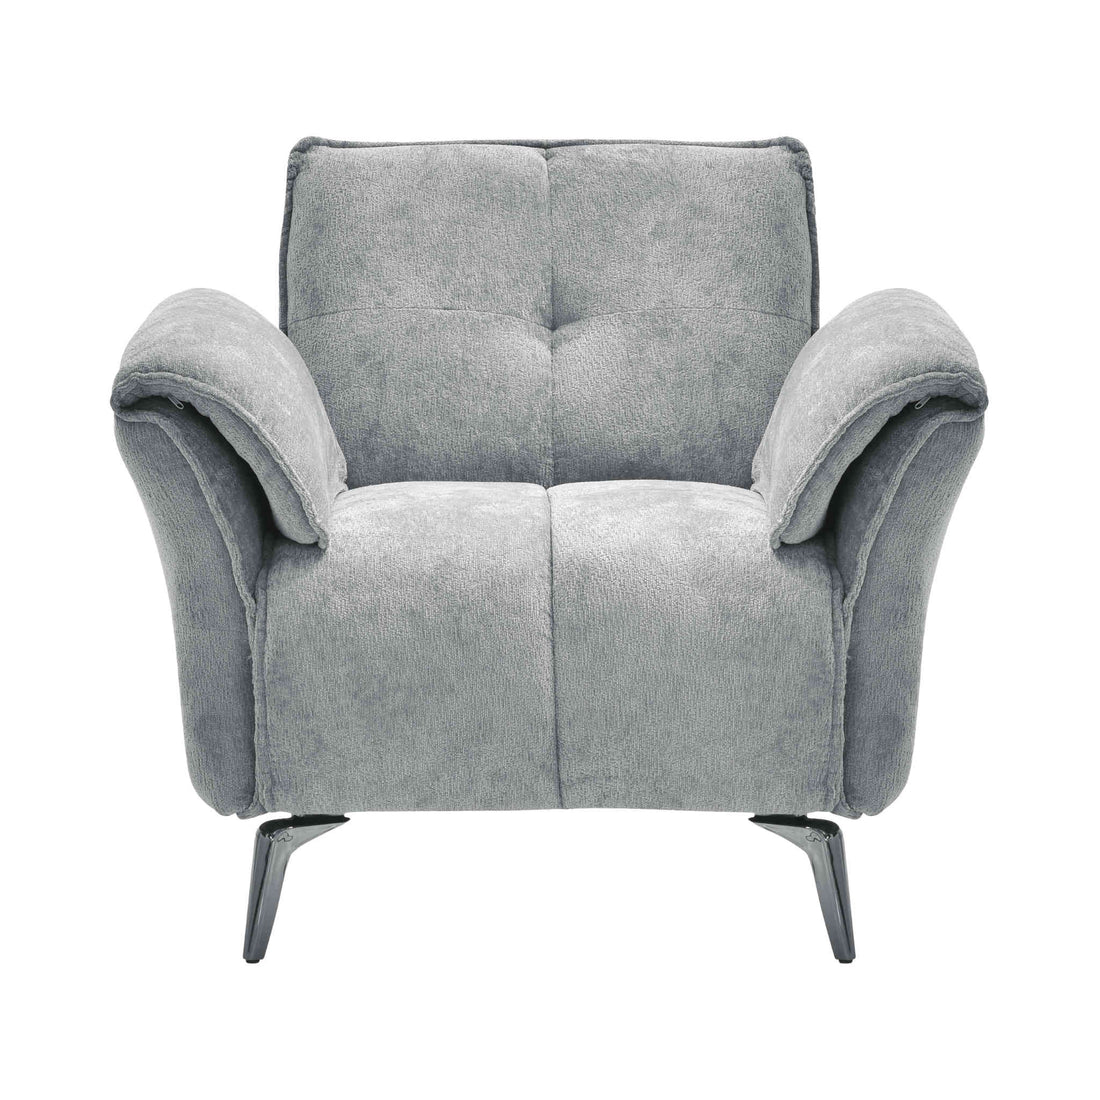 Amalfi 1 Seater Sofa (Grey Fabric)